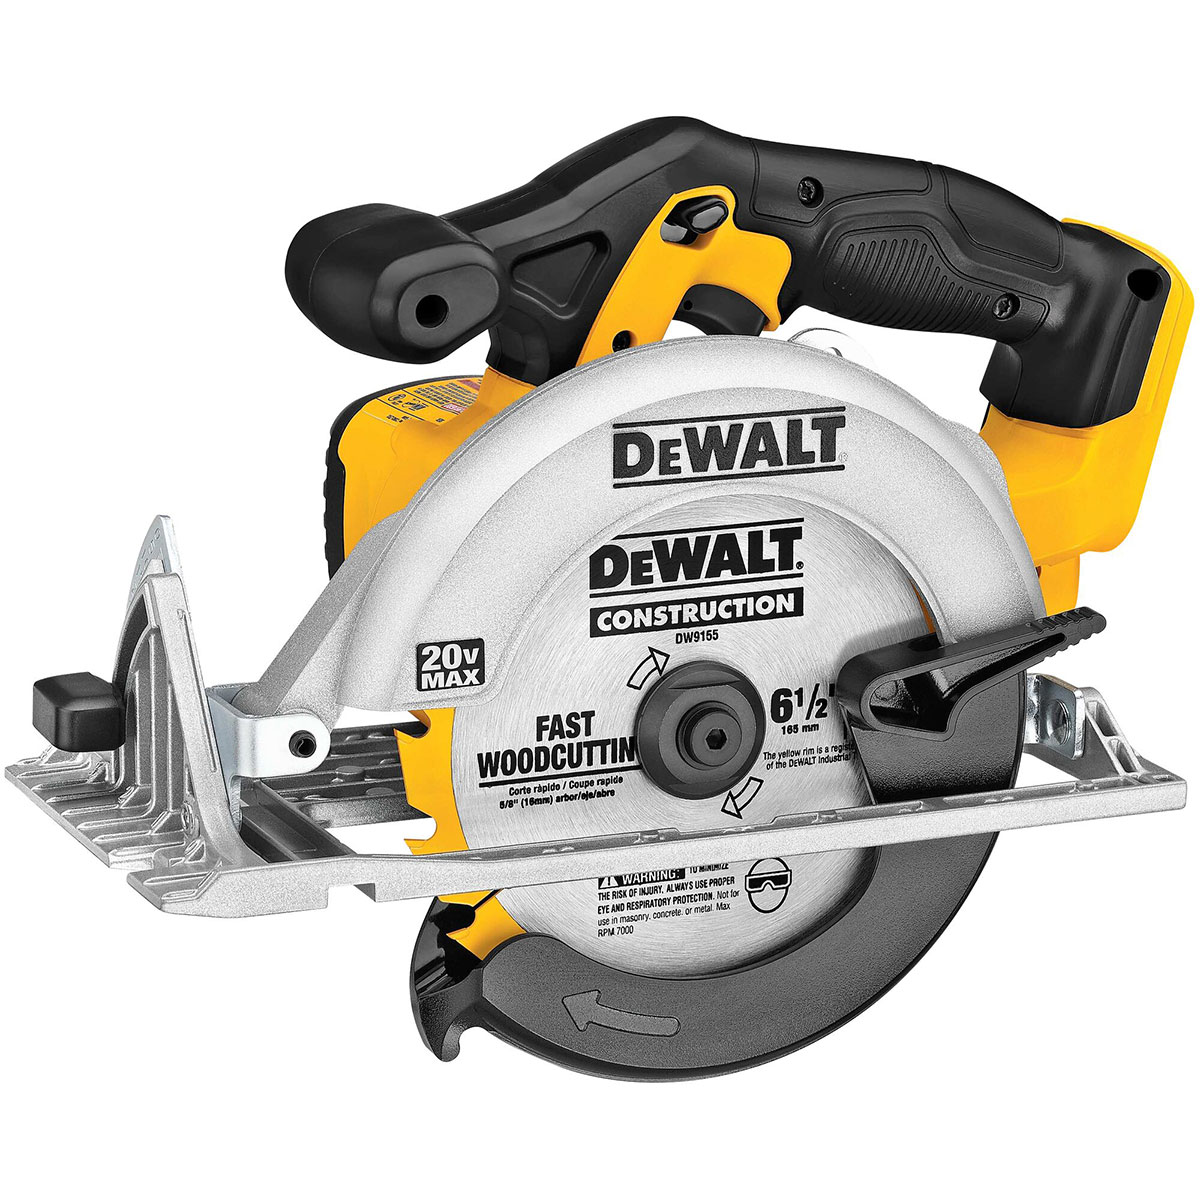 DeWalt 20V MAX 6-1/2" Circular Saw